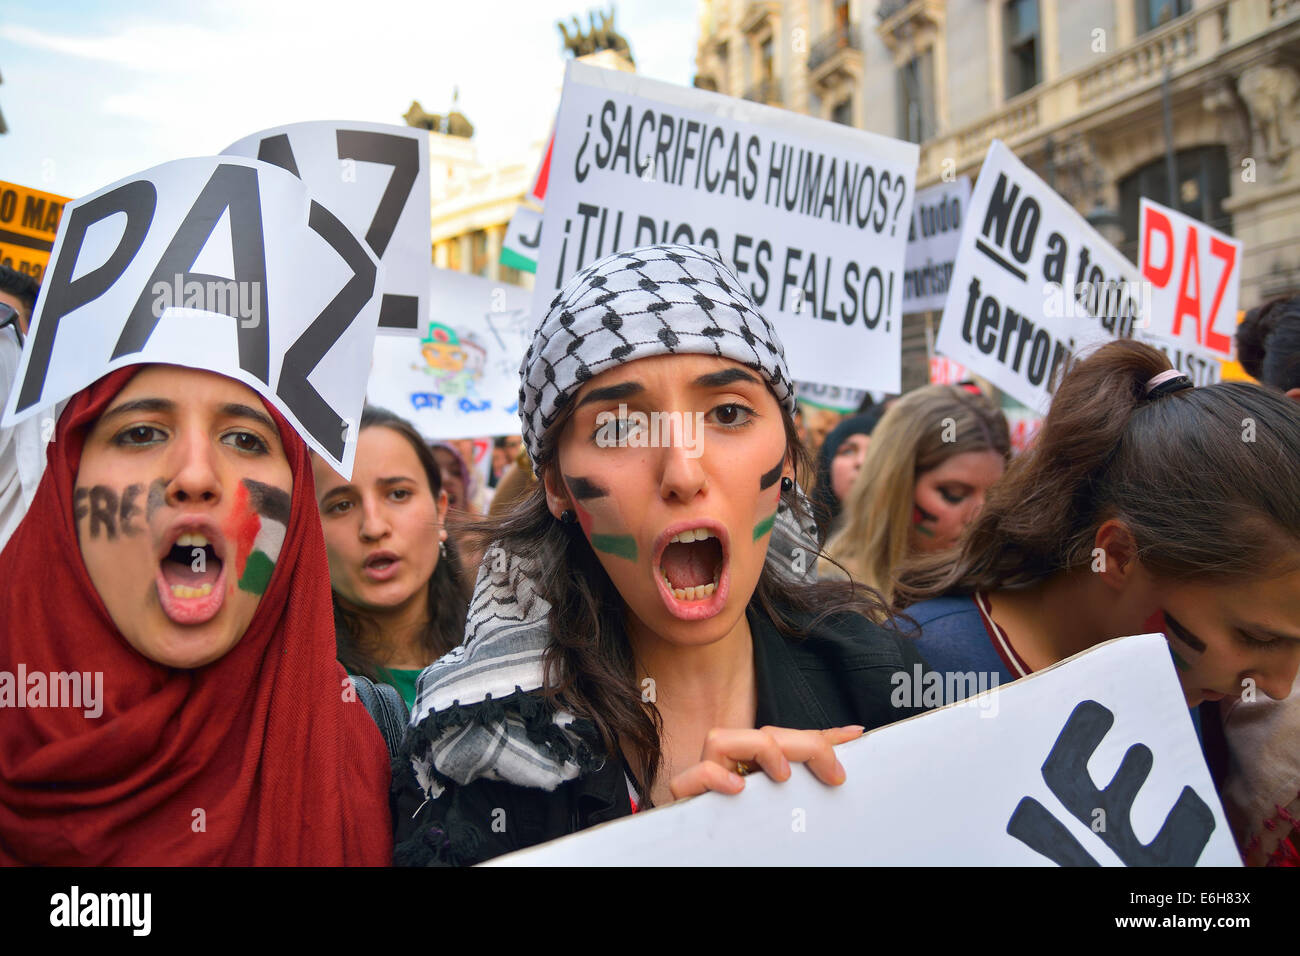 Le donne chiedono la pace e per protestare contro gli attacchi israeliani nella Striscia di Gaza nel corso di una manifestazione a Madrid il 18 luglio, 2014 Foto Stock